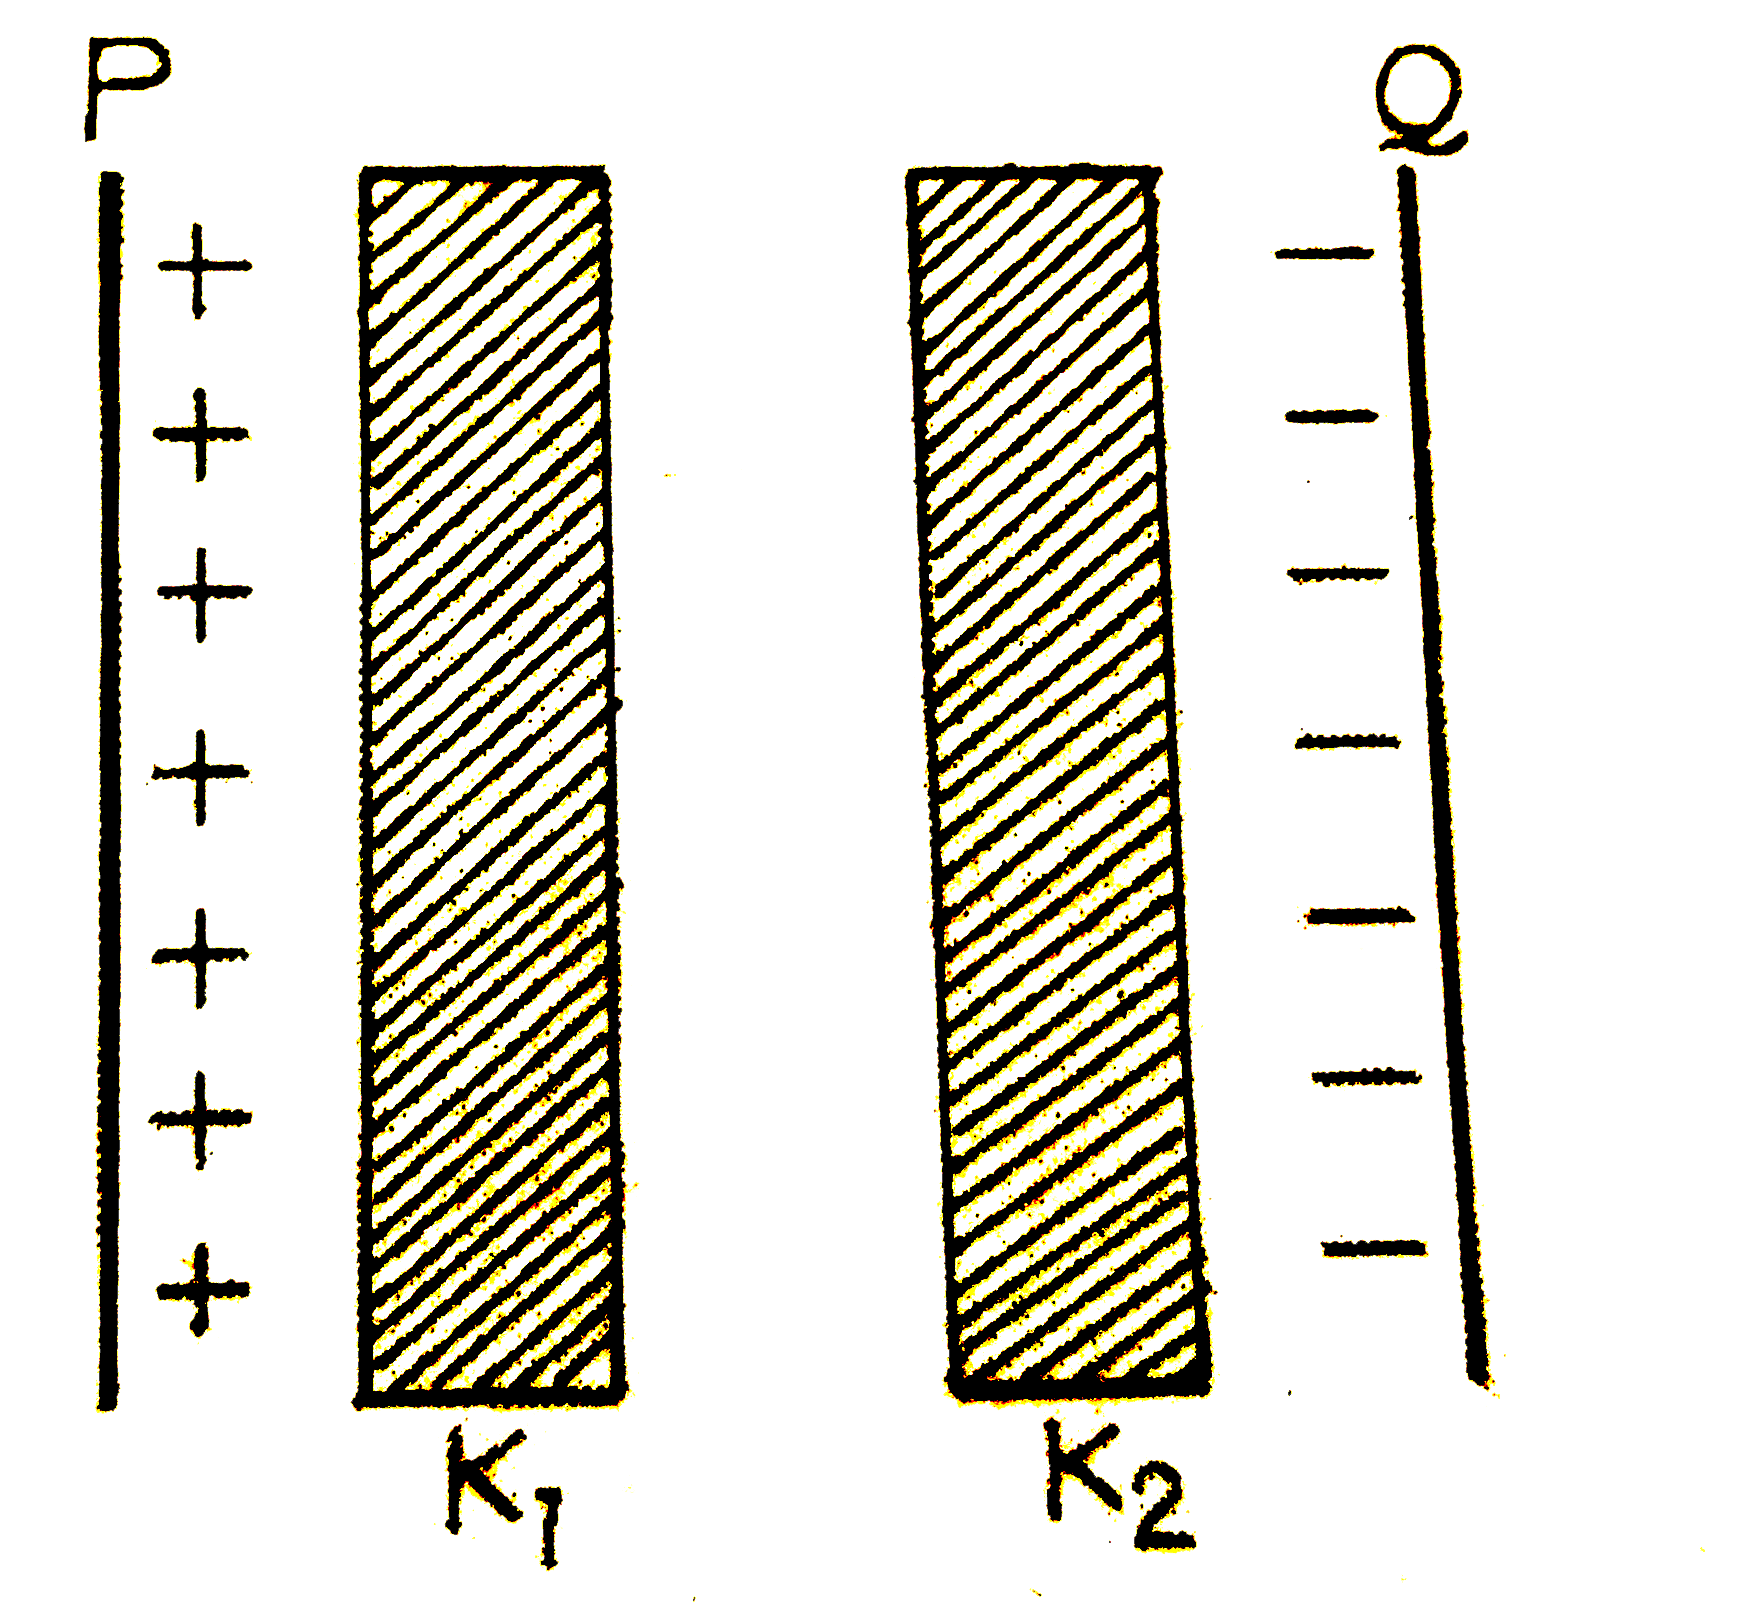 एक समांतर प्लेट संधारित्र की दो प्लेटो के बीच में K(1) तथा K(2) (K(1) lt K(2)) परावैद्युतांक के दो पतले स्लैब (पट्टिका) चित्र में दर्शाये गये अनुसार रखे गये है। संधारित्र की दो प्लेटो के बीच वैद्युत क्षेत्र के मान E में, प्लेट P से दूरी d के साथ परिवर्तन को कोण-सा ग्राफ सही रूप से दर्शाता है?